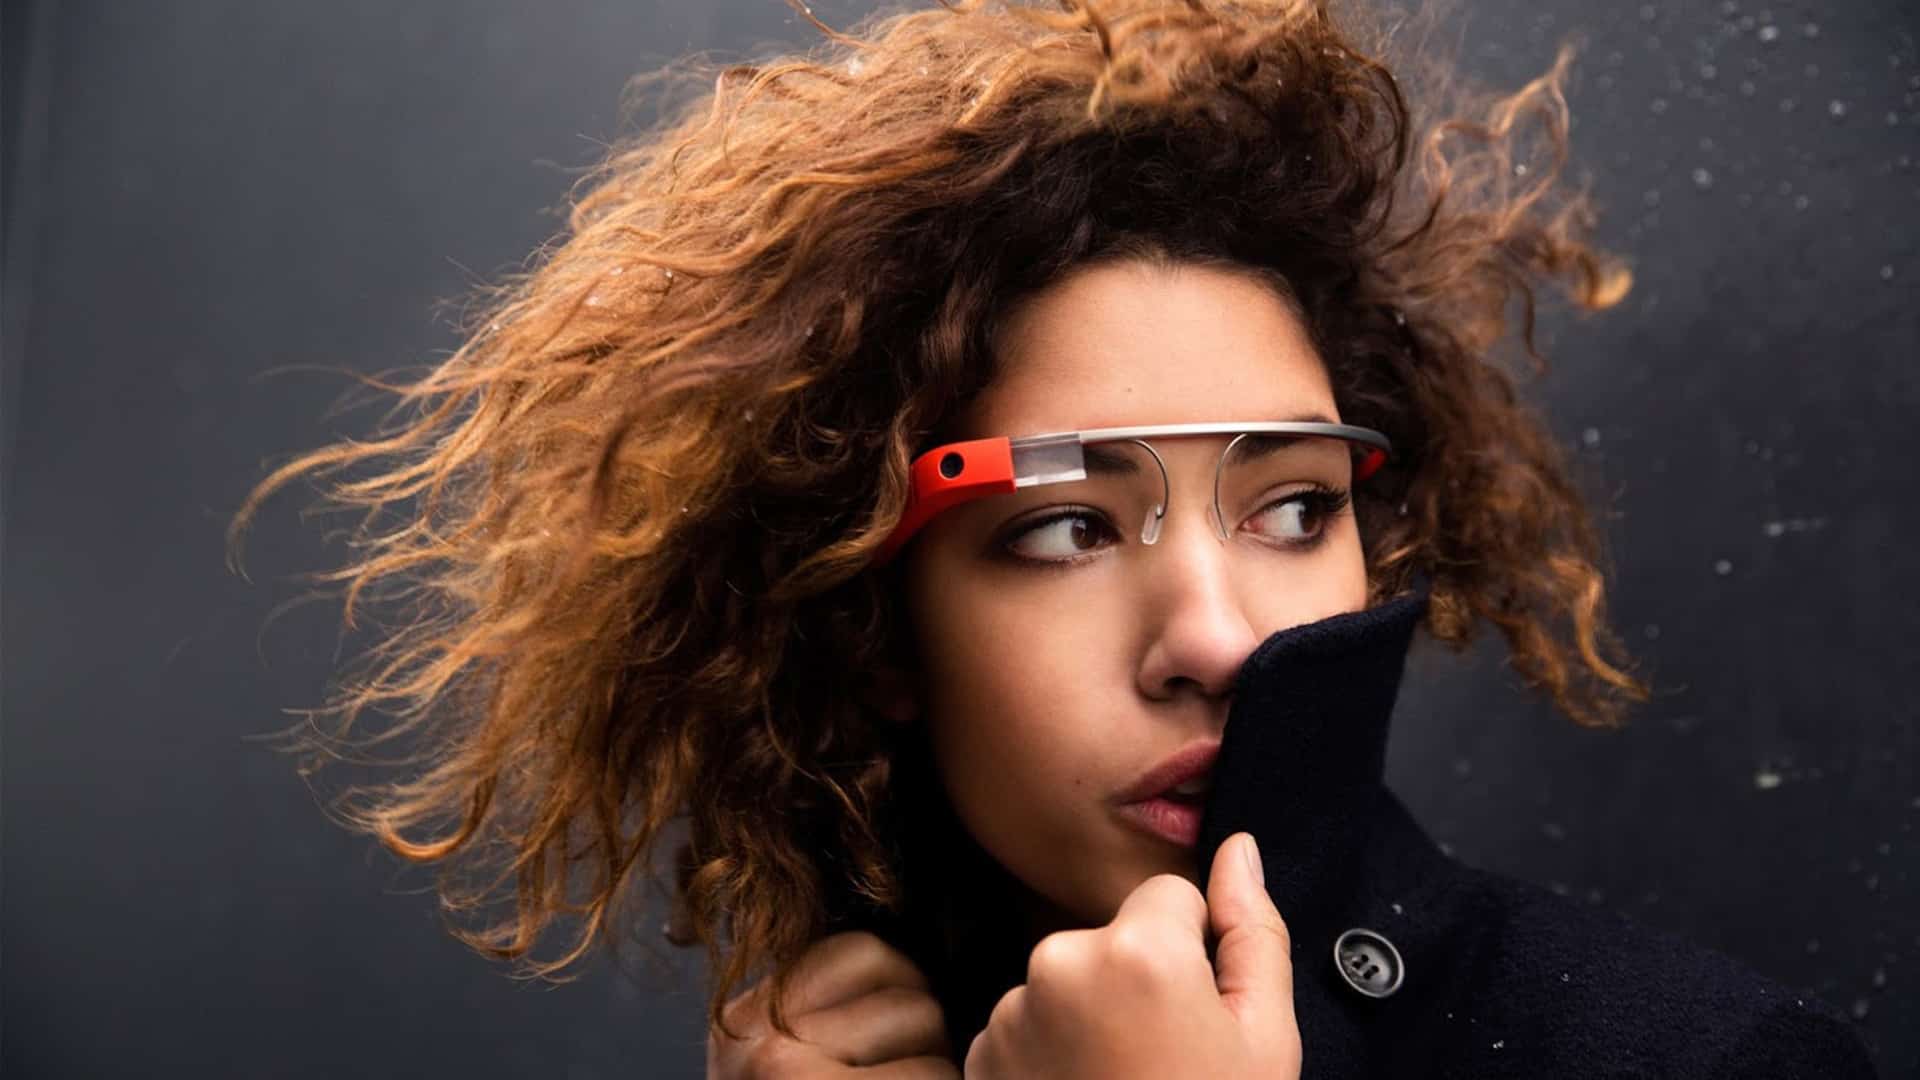 Oficial: Google Glass terá câmera de 5 Megapixels e som transmitido pelos ossos 7